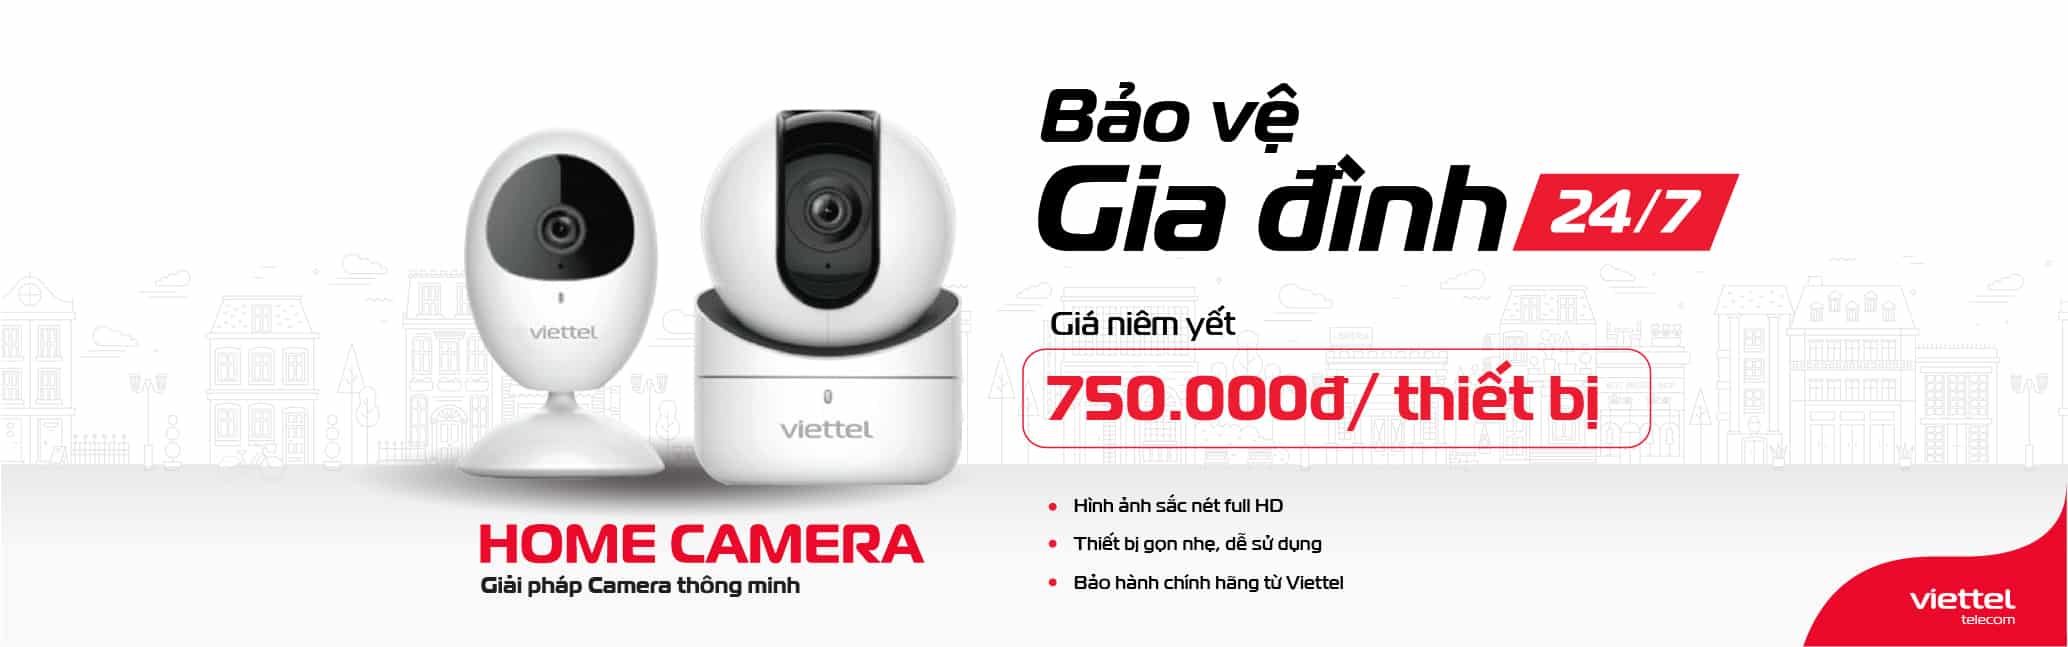 Mua camera Viettel chính hãng giá rẻ